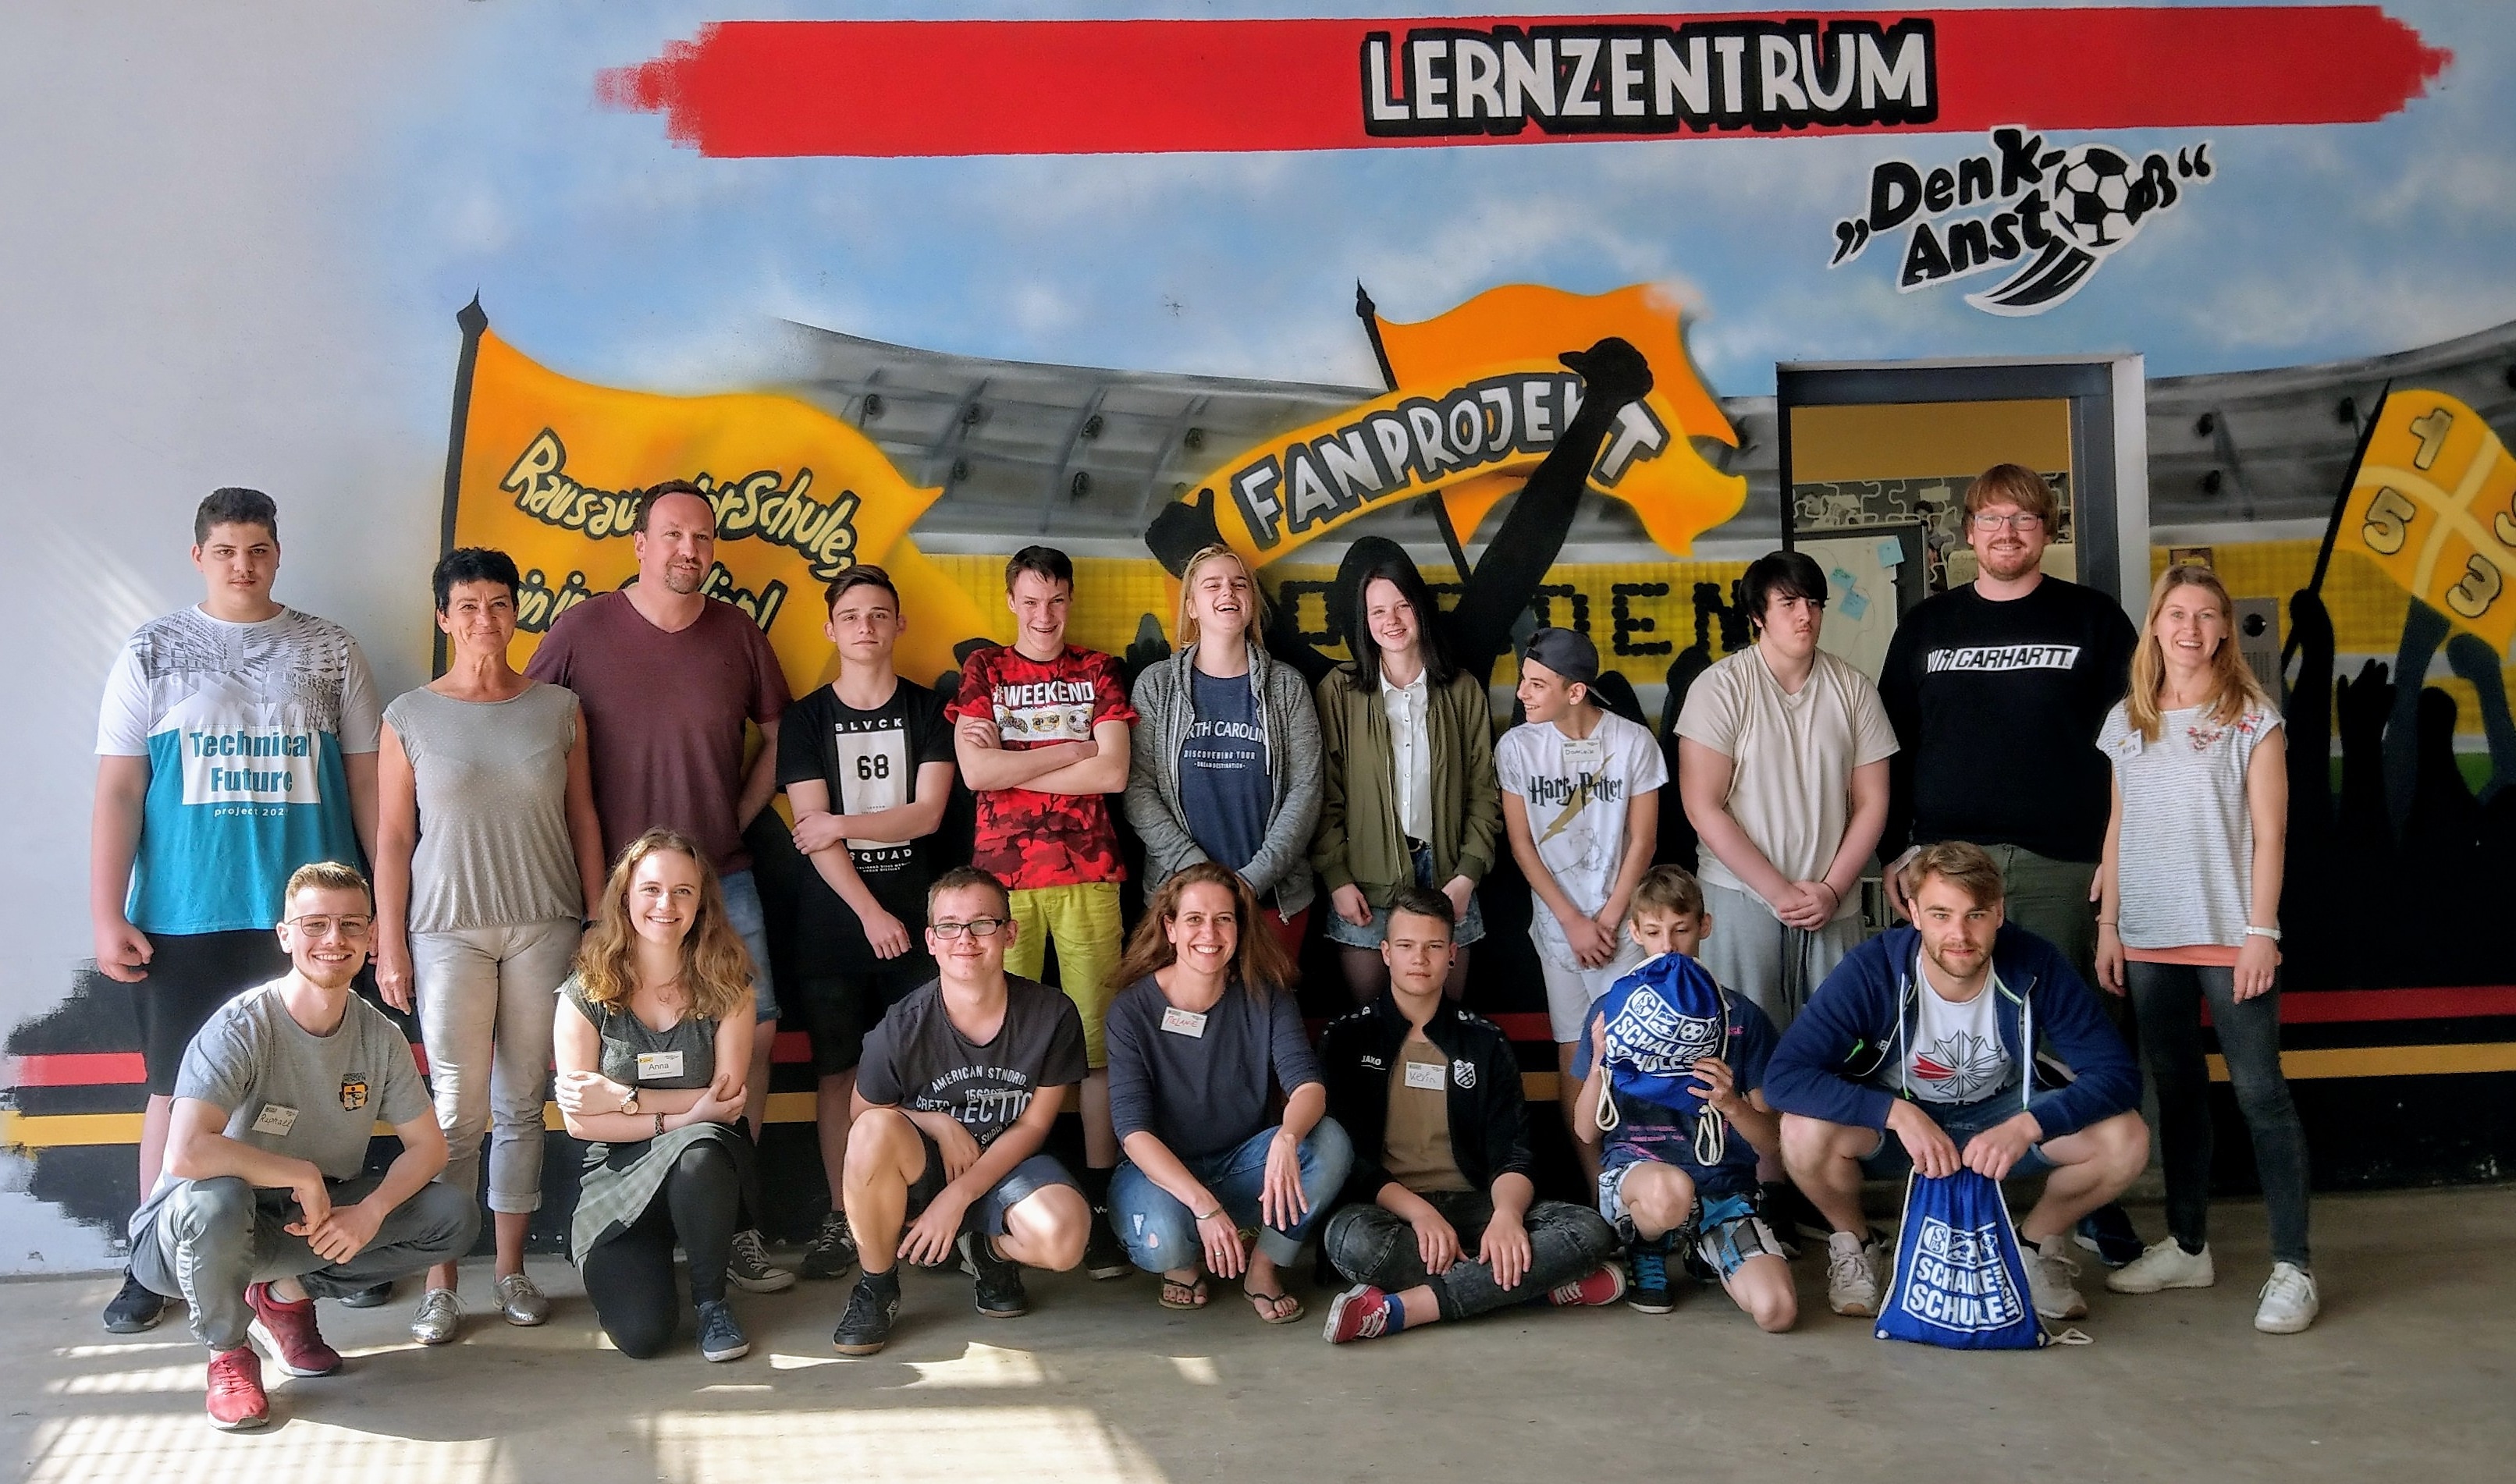 Klassenfahrt „All inclusive“ – Gelsenkirchner Jugendliche zu Gast im Lernzentrum